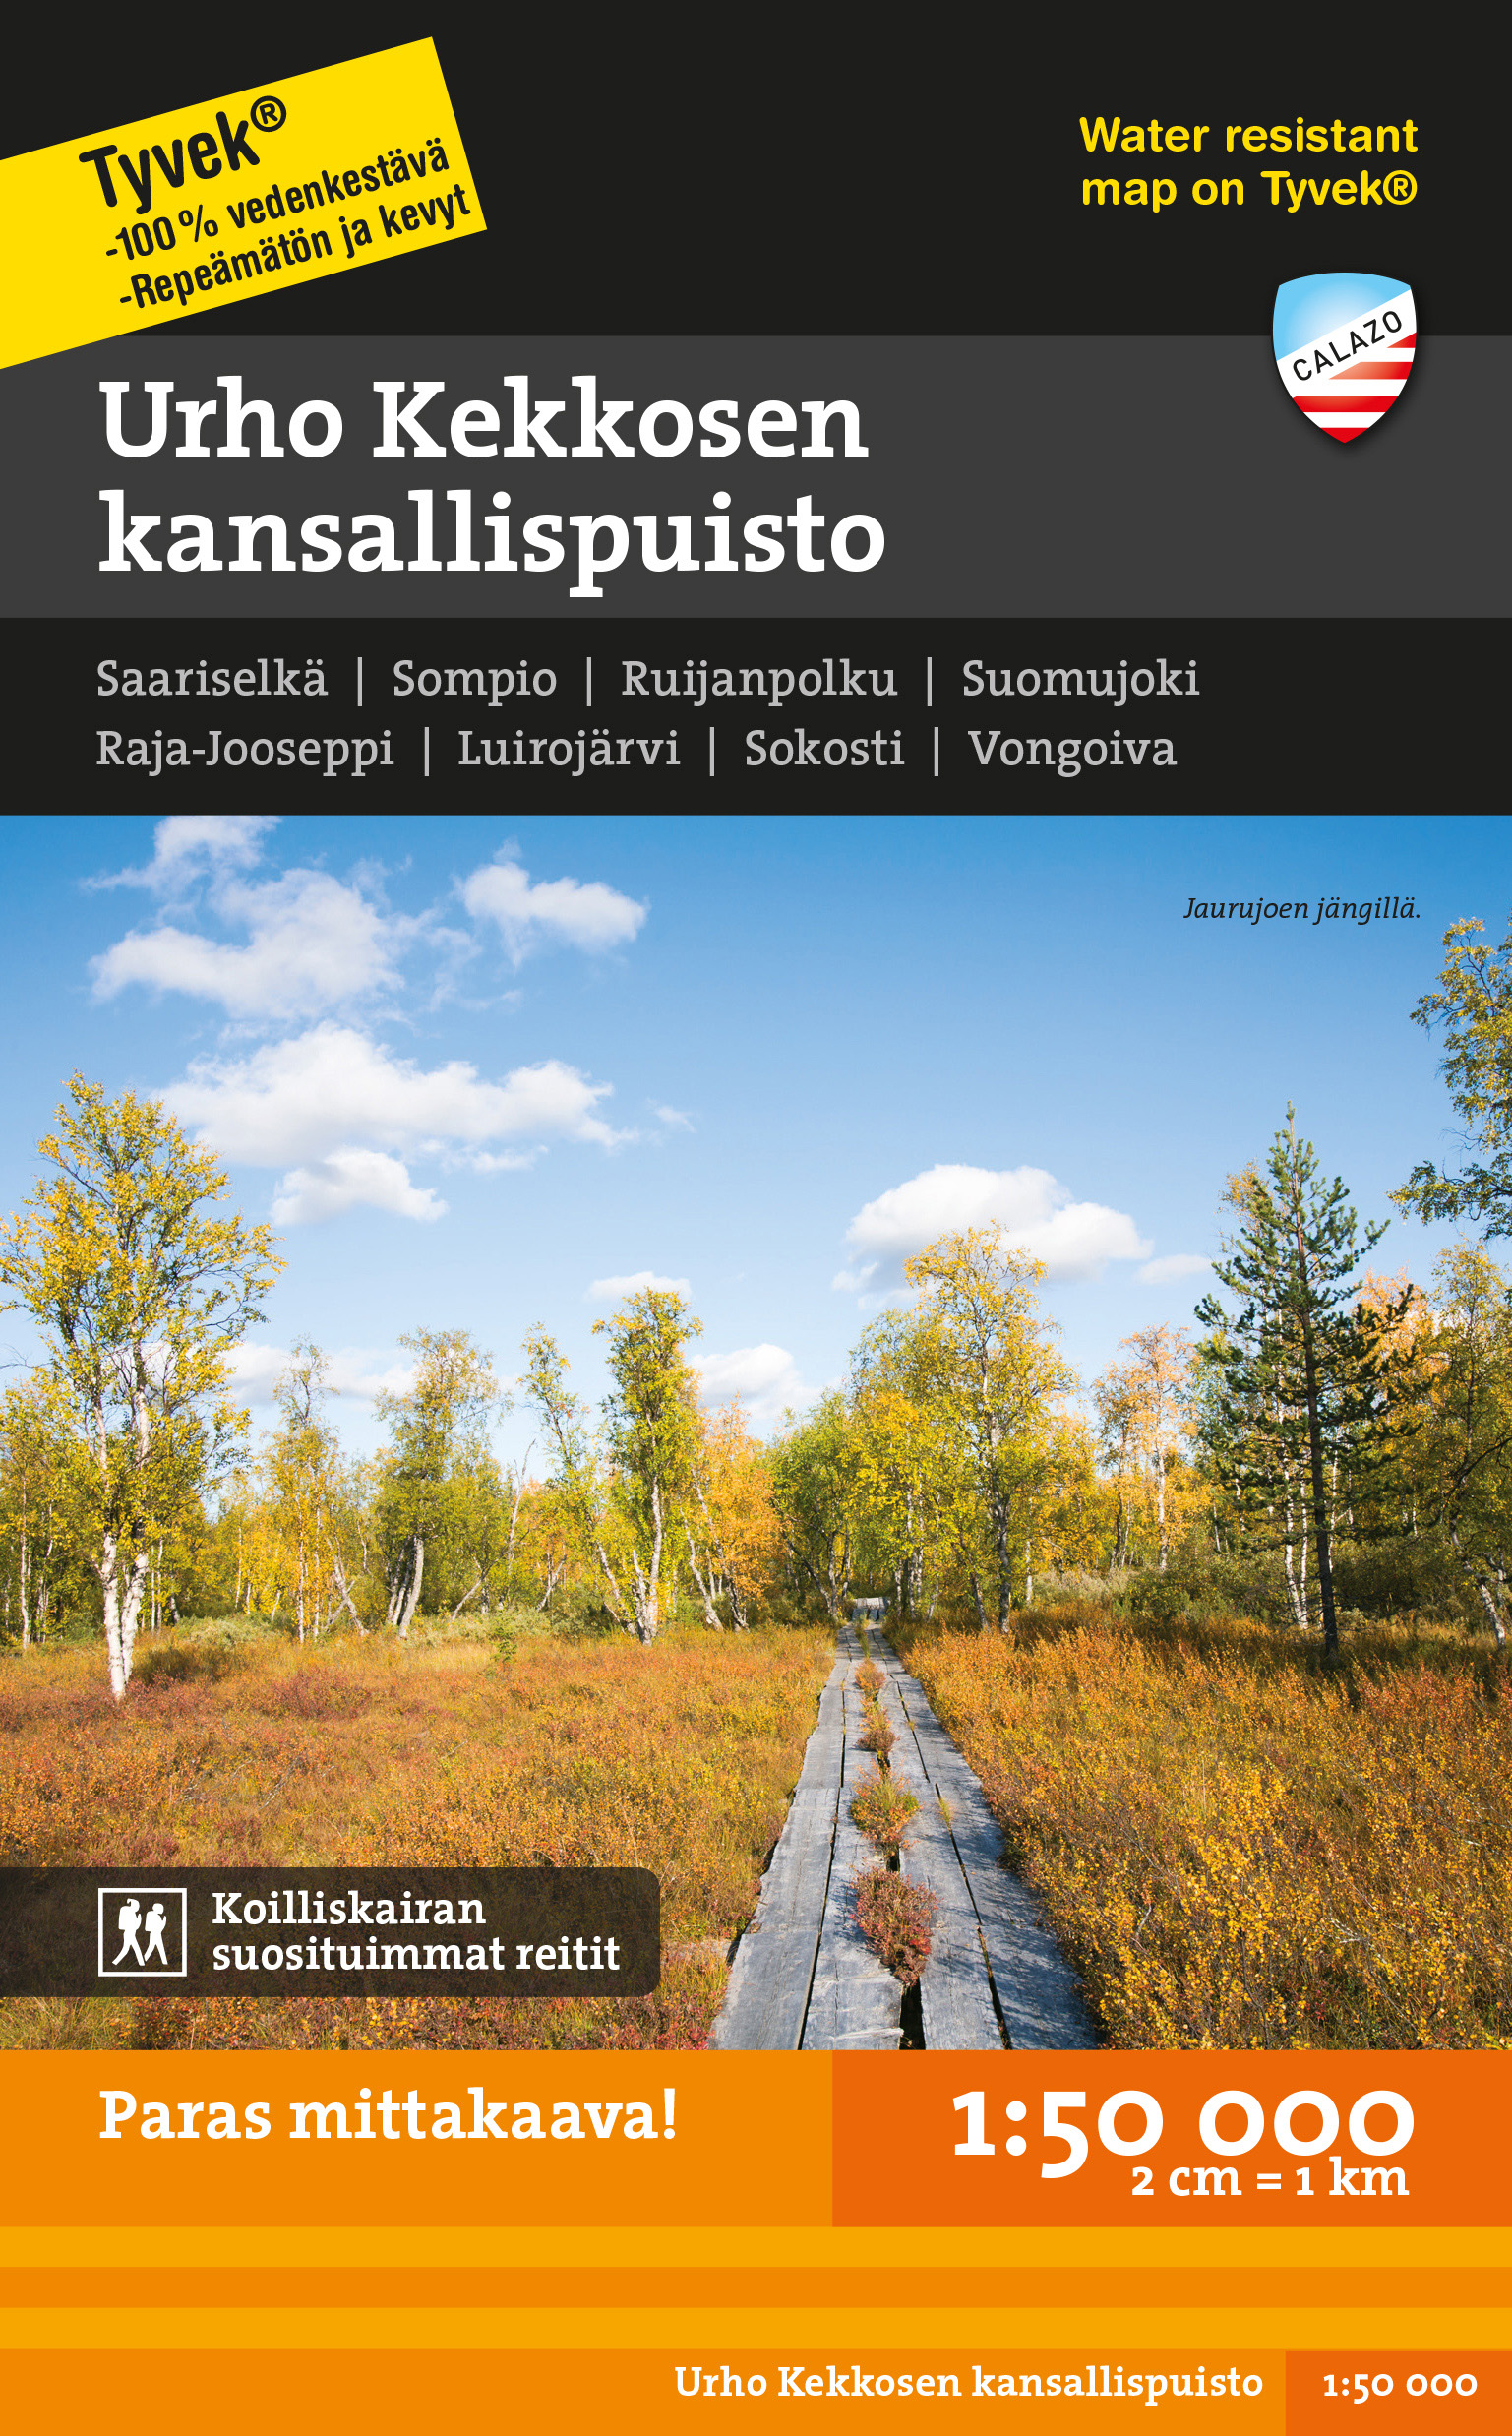 Online bestellen: Wandelkaart Fjällkartor 1:50.000 Urho Kekkosen kansallispuisto | Finland | Calazo